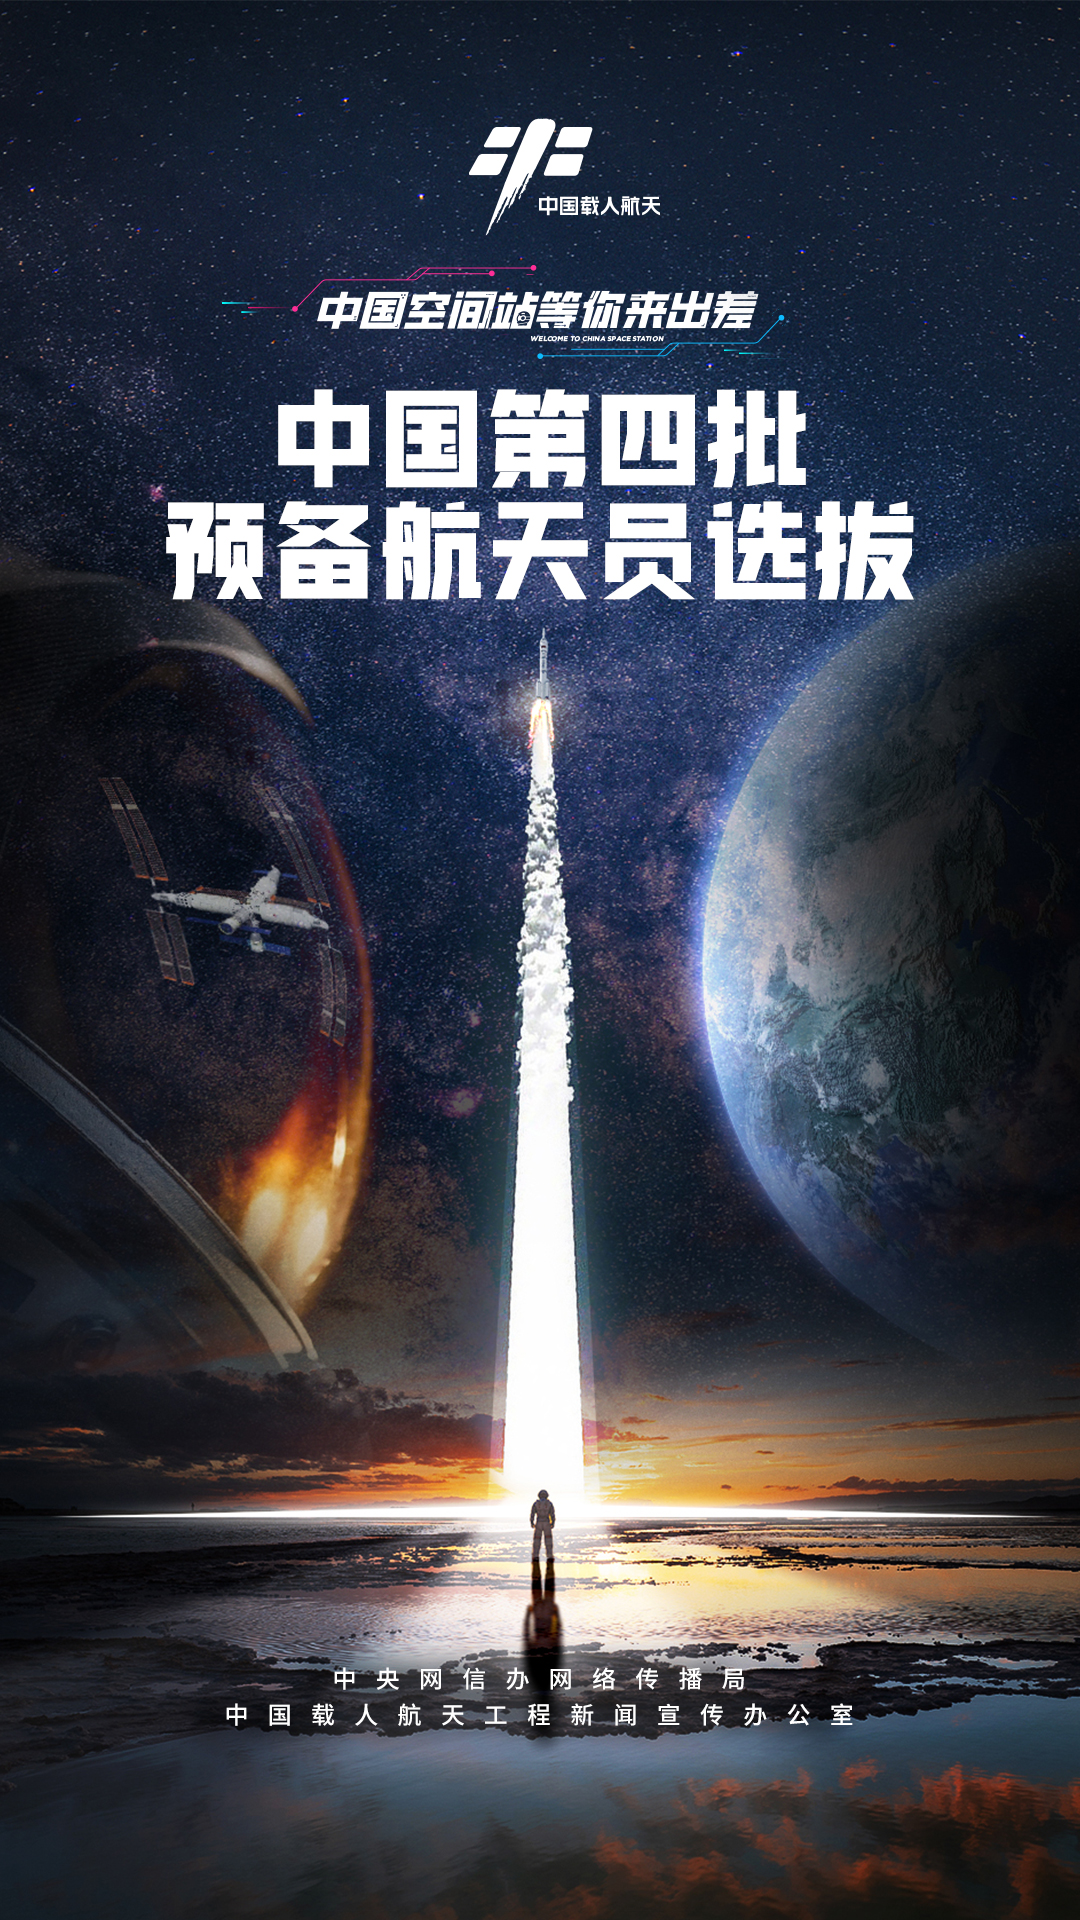 中国启动第四批预备航天员选拔